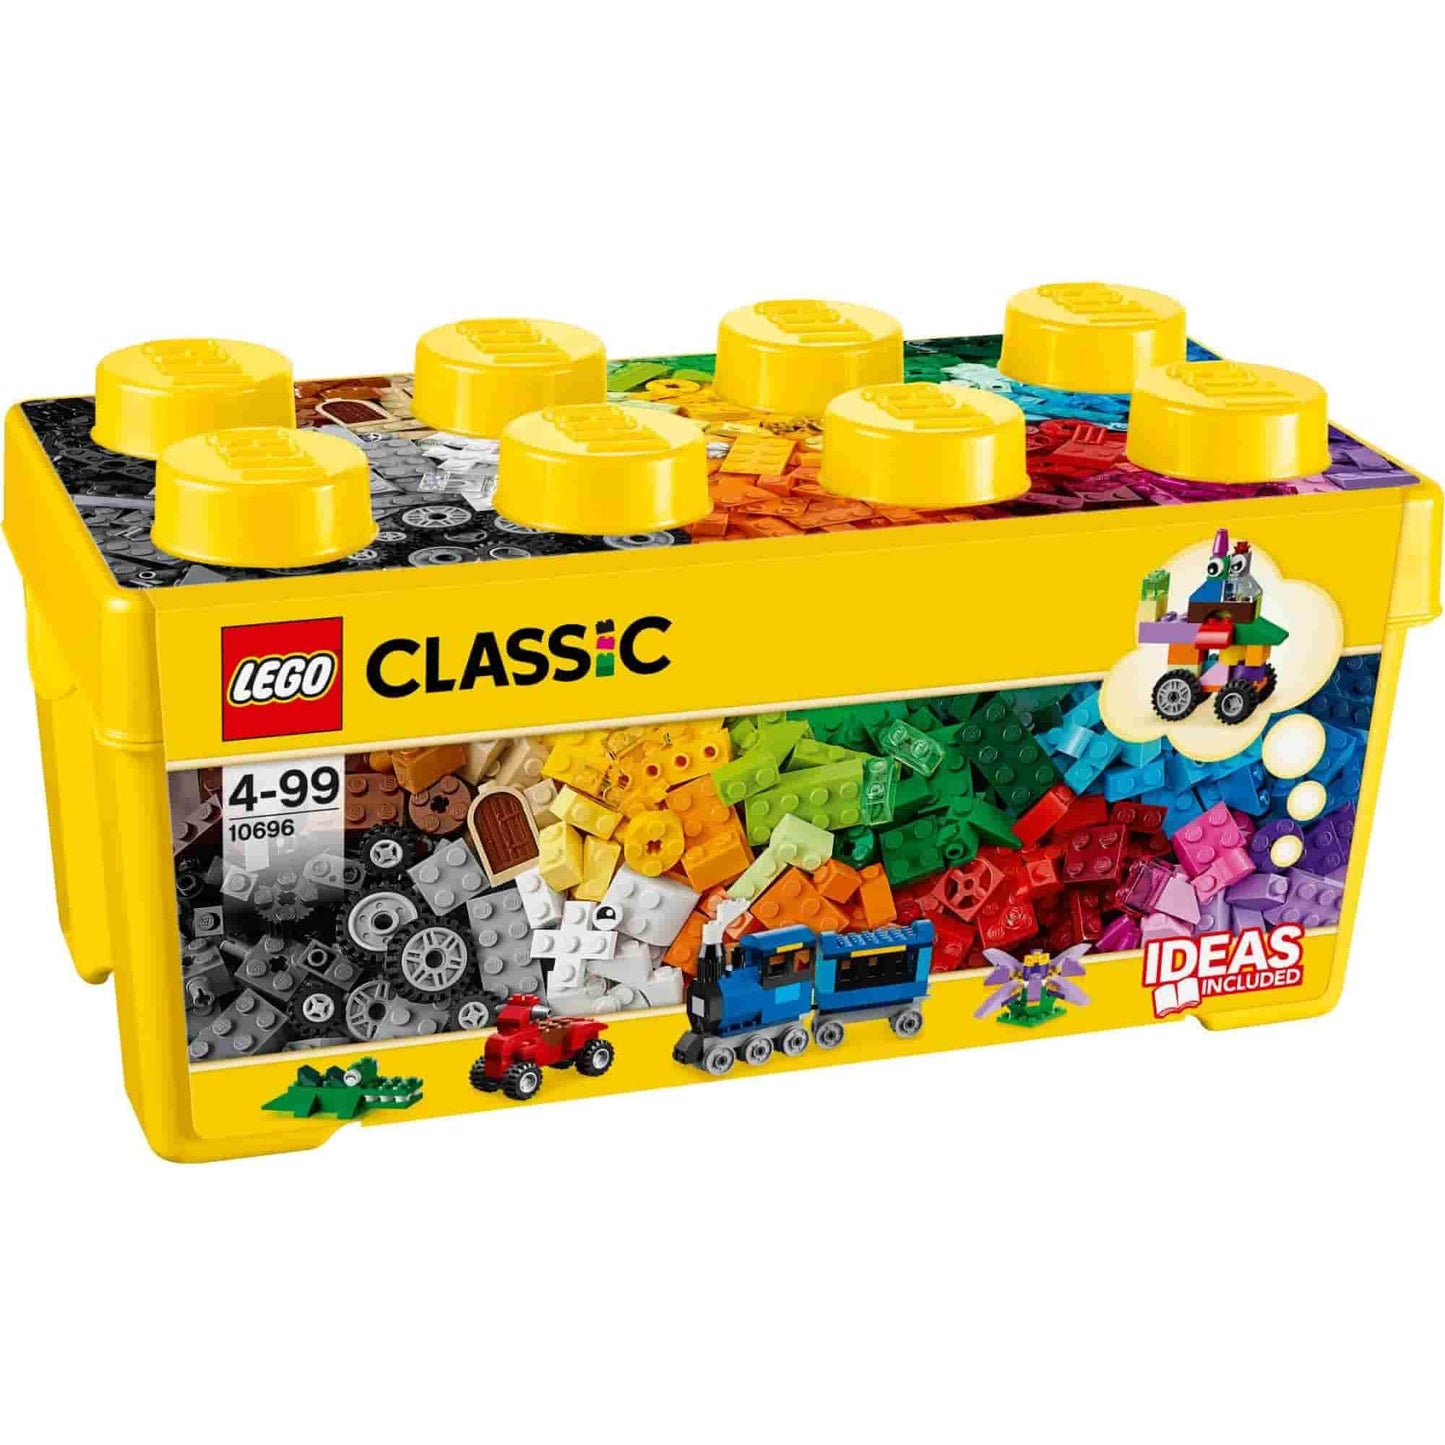 LEGO Classics Medium Box 10696-Lego-1-Játszma.ro - A maradandó élmények boltja